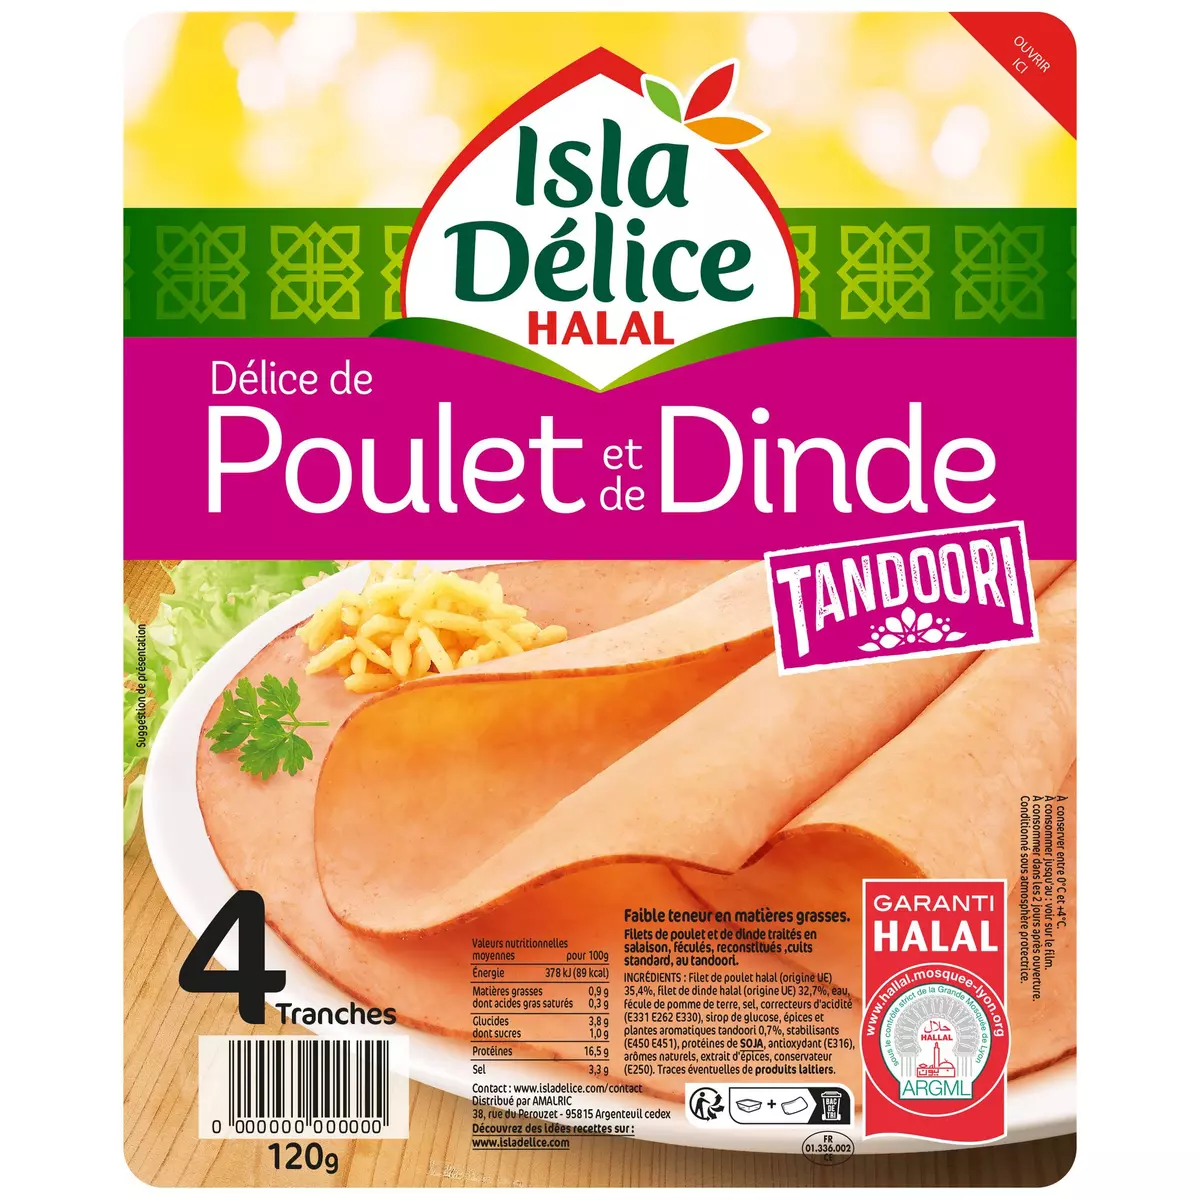 ISLA DELICE Délice de poulet tandoori halal 4 tranches 120g